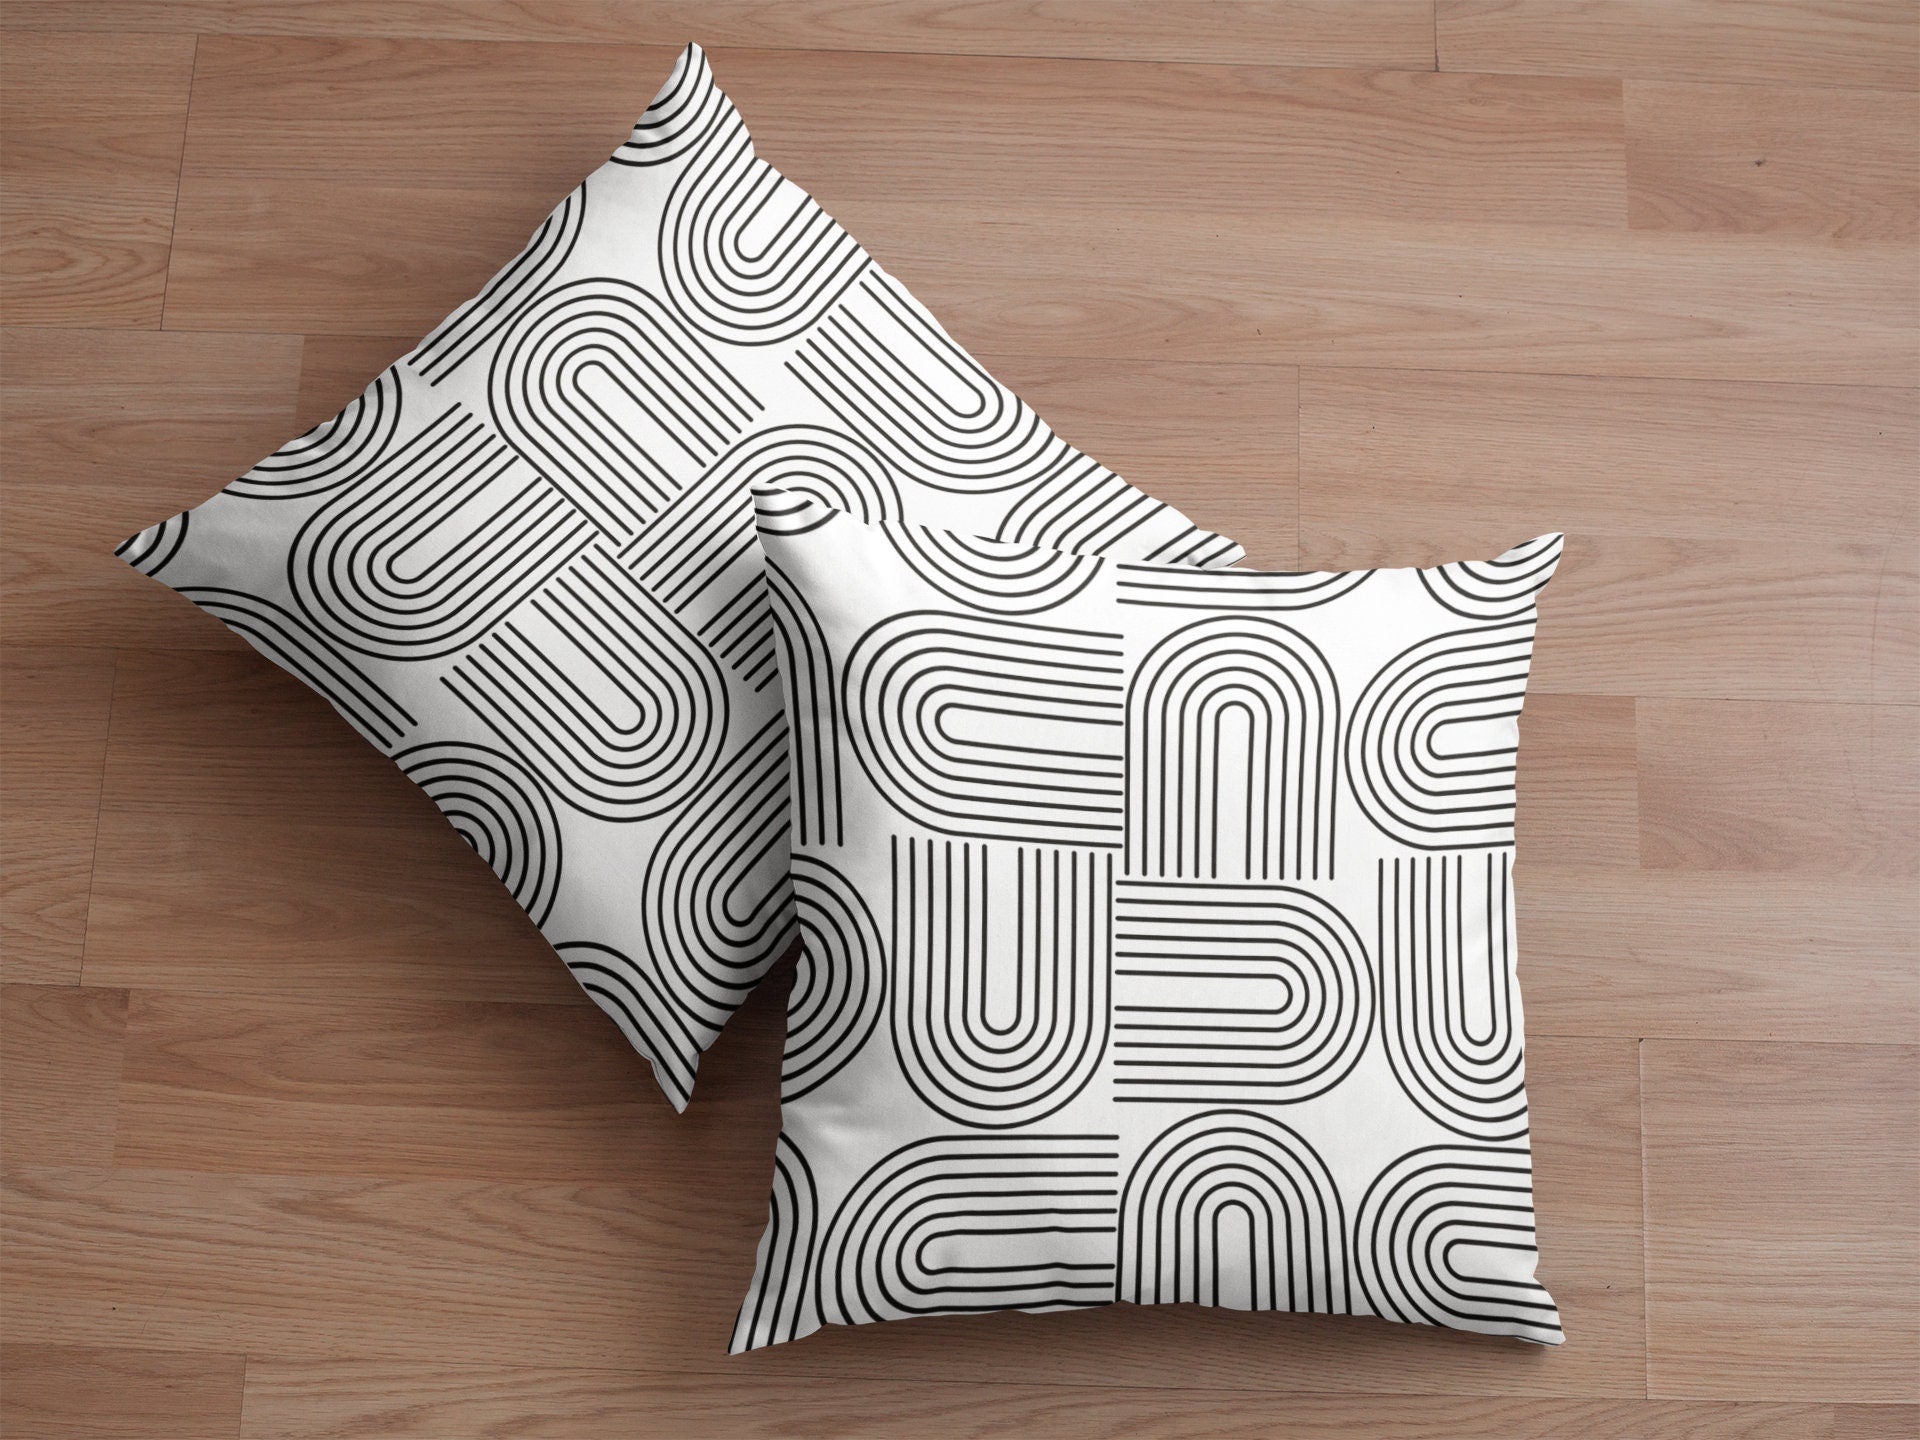 Minimalist Abstract Pillows